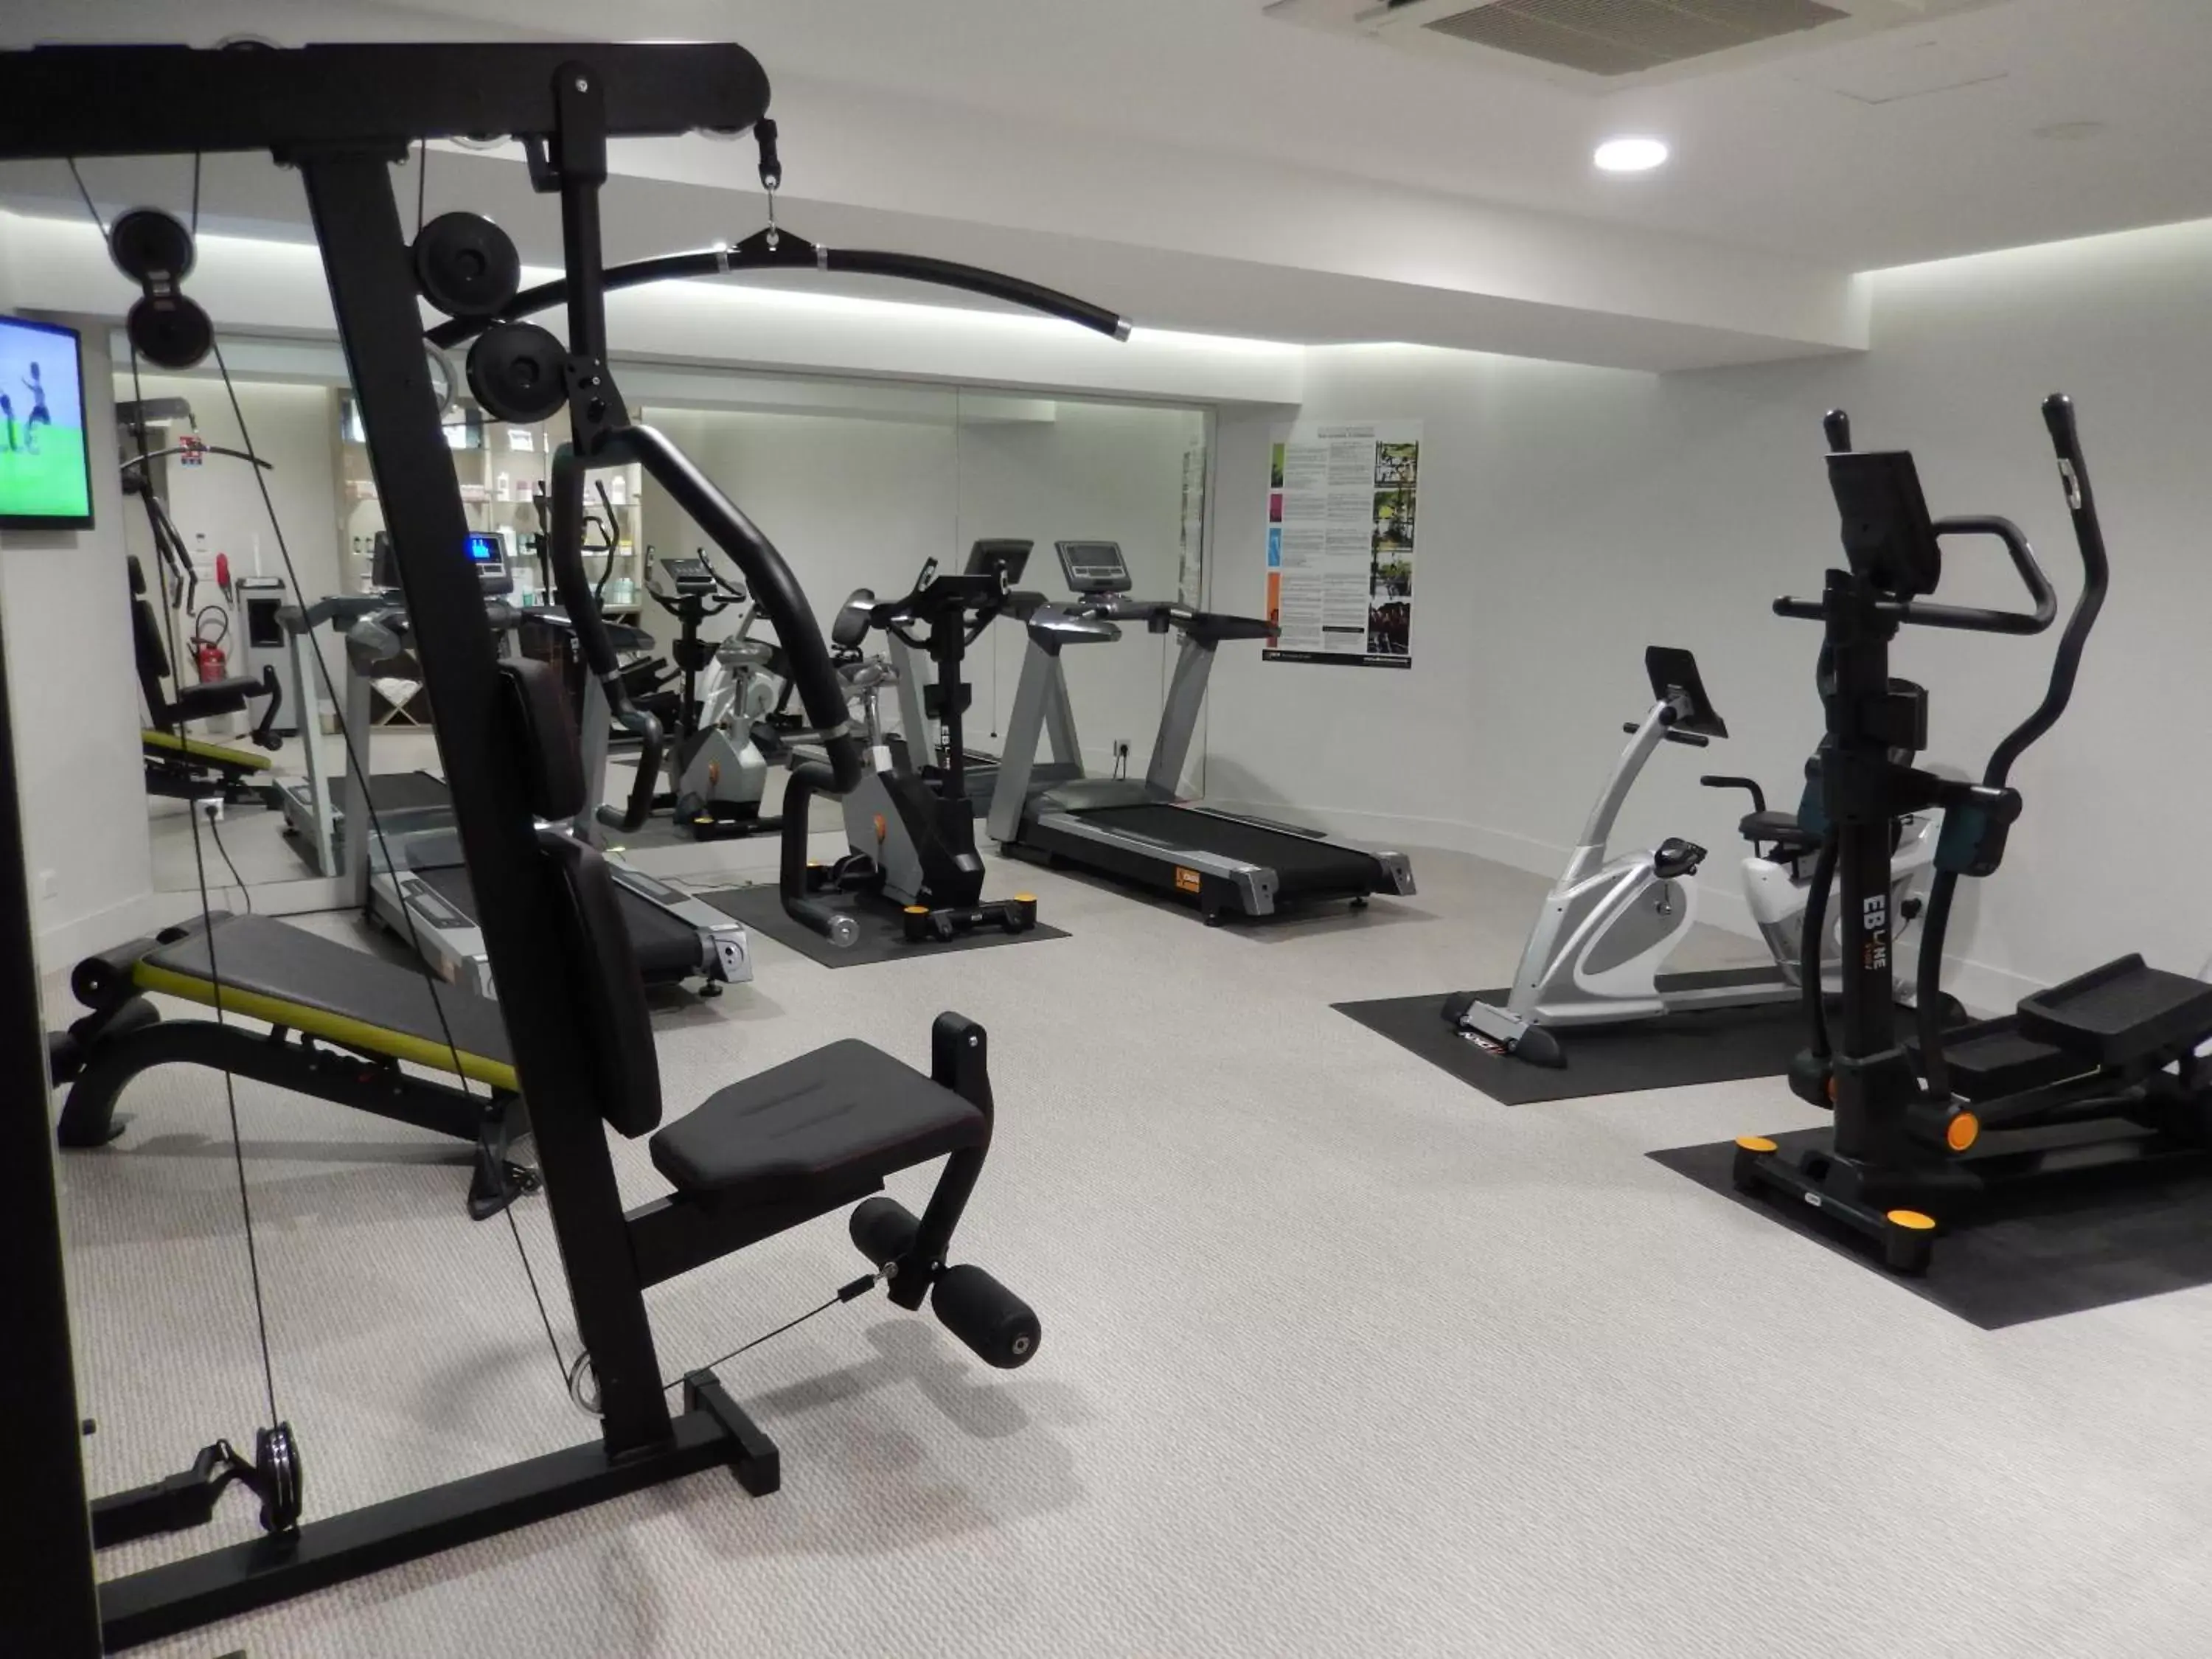 Fitness centre/facilities, Fitness Center/Facilities in ibis Styles La Rochelle Centre